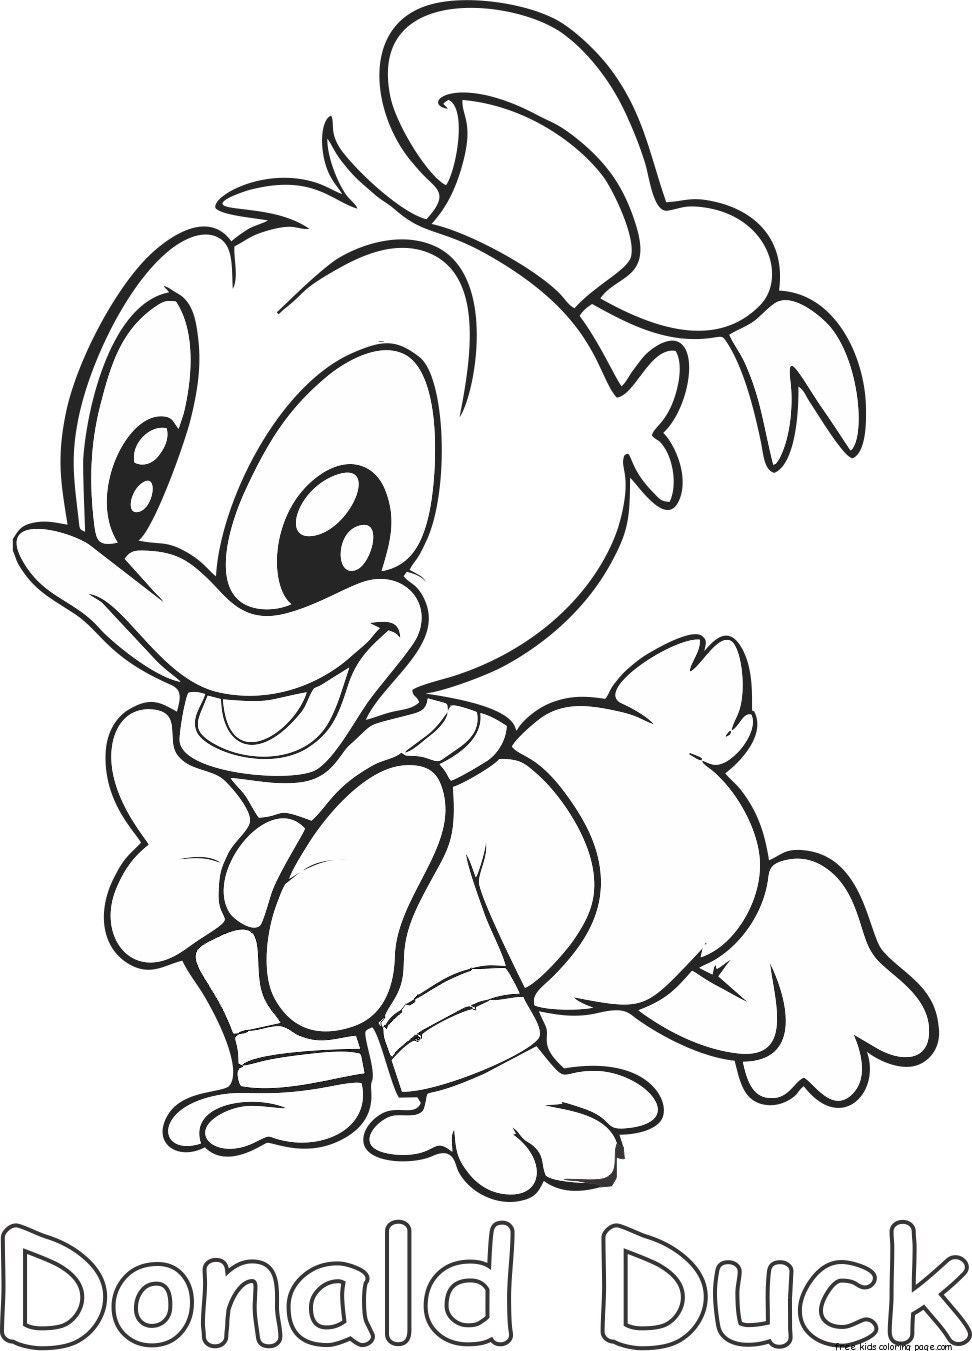 donald duck coloring donald duck coloring pages coloringpagesabccom duck coloring donald 1 1